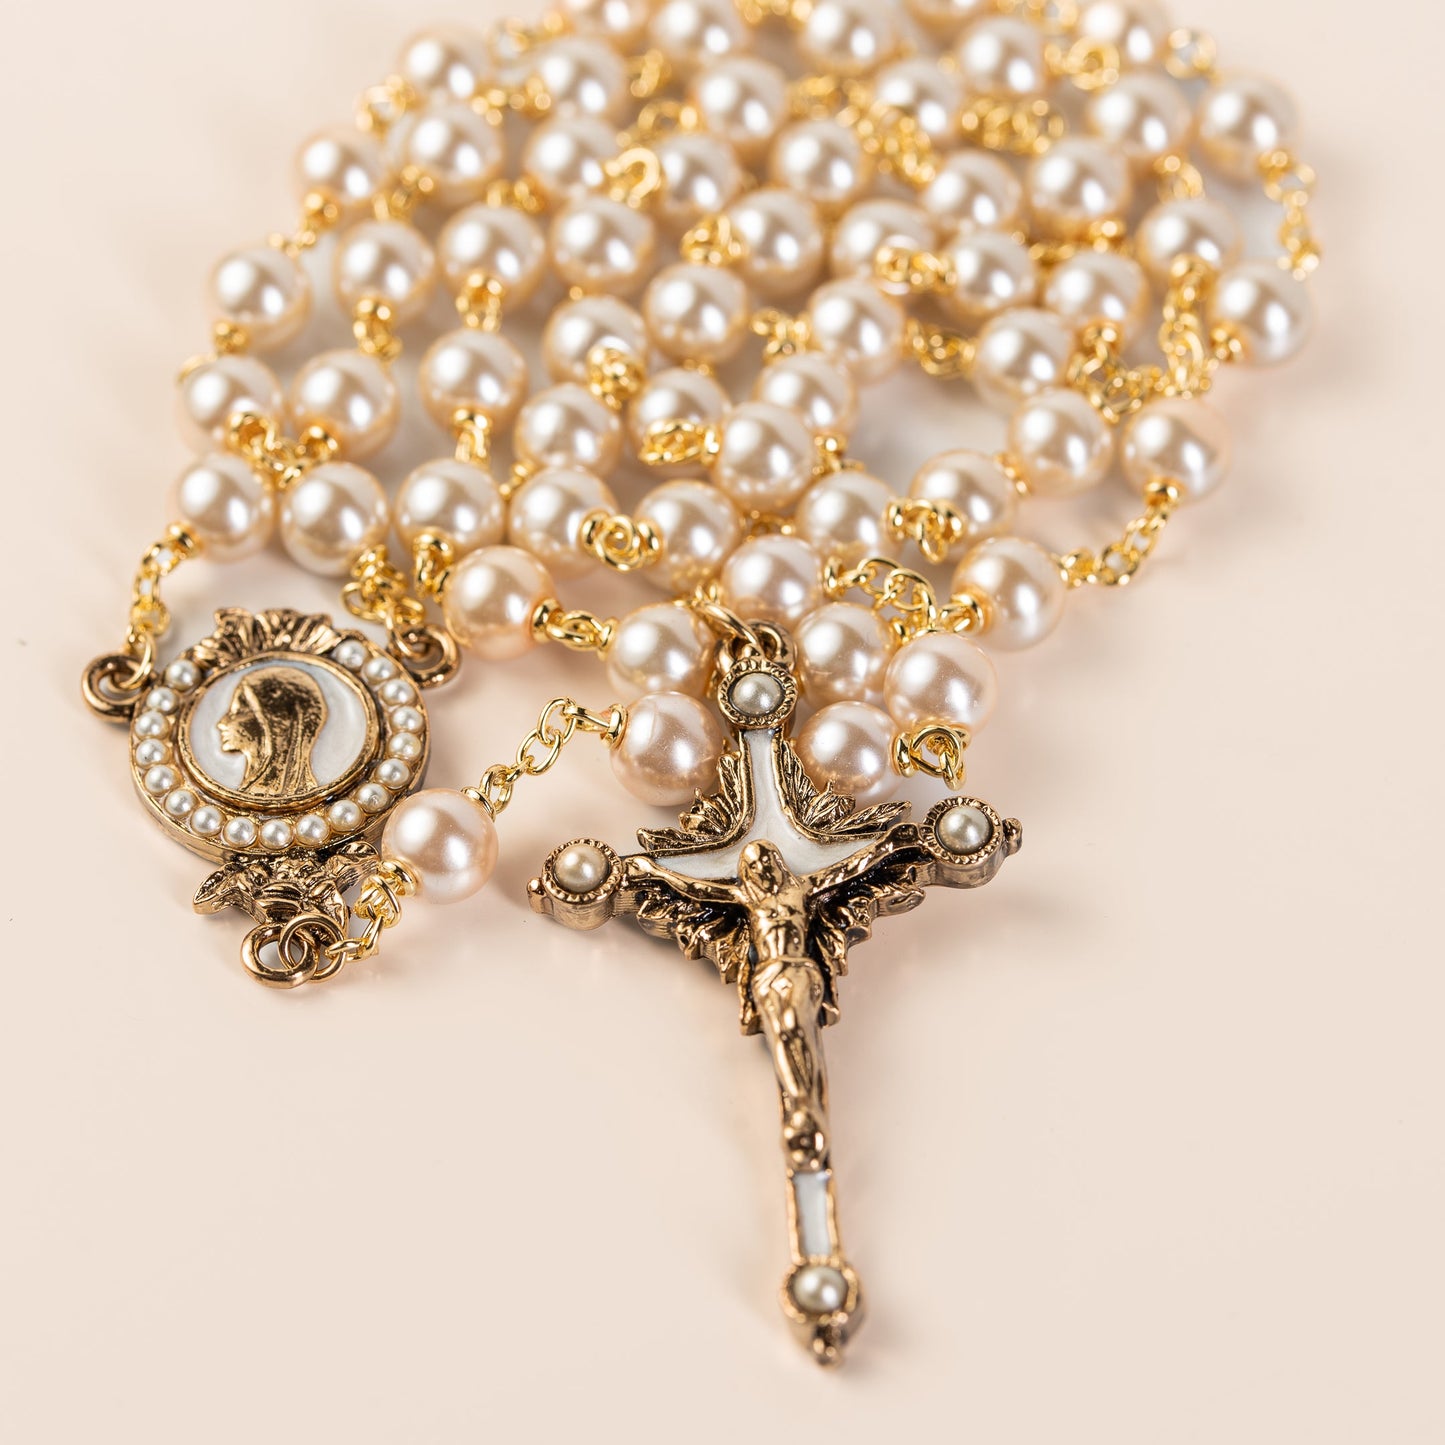 Beaded rosary